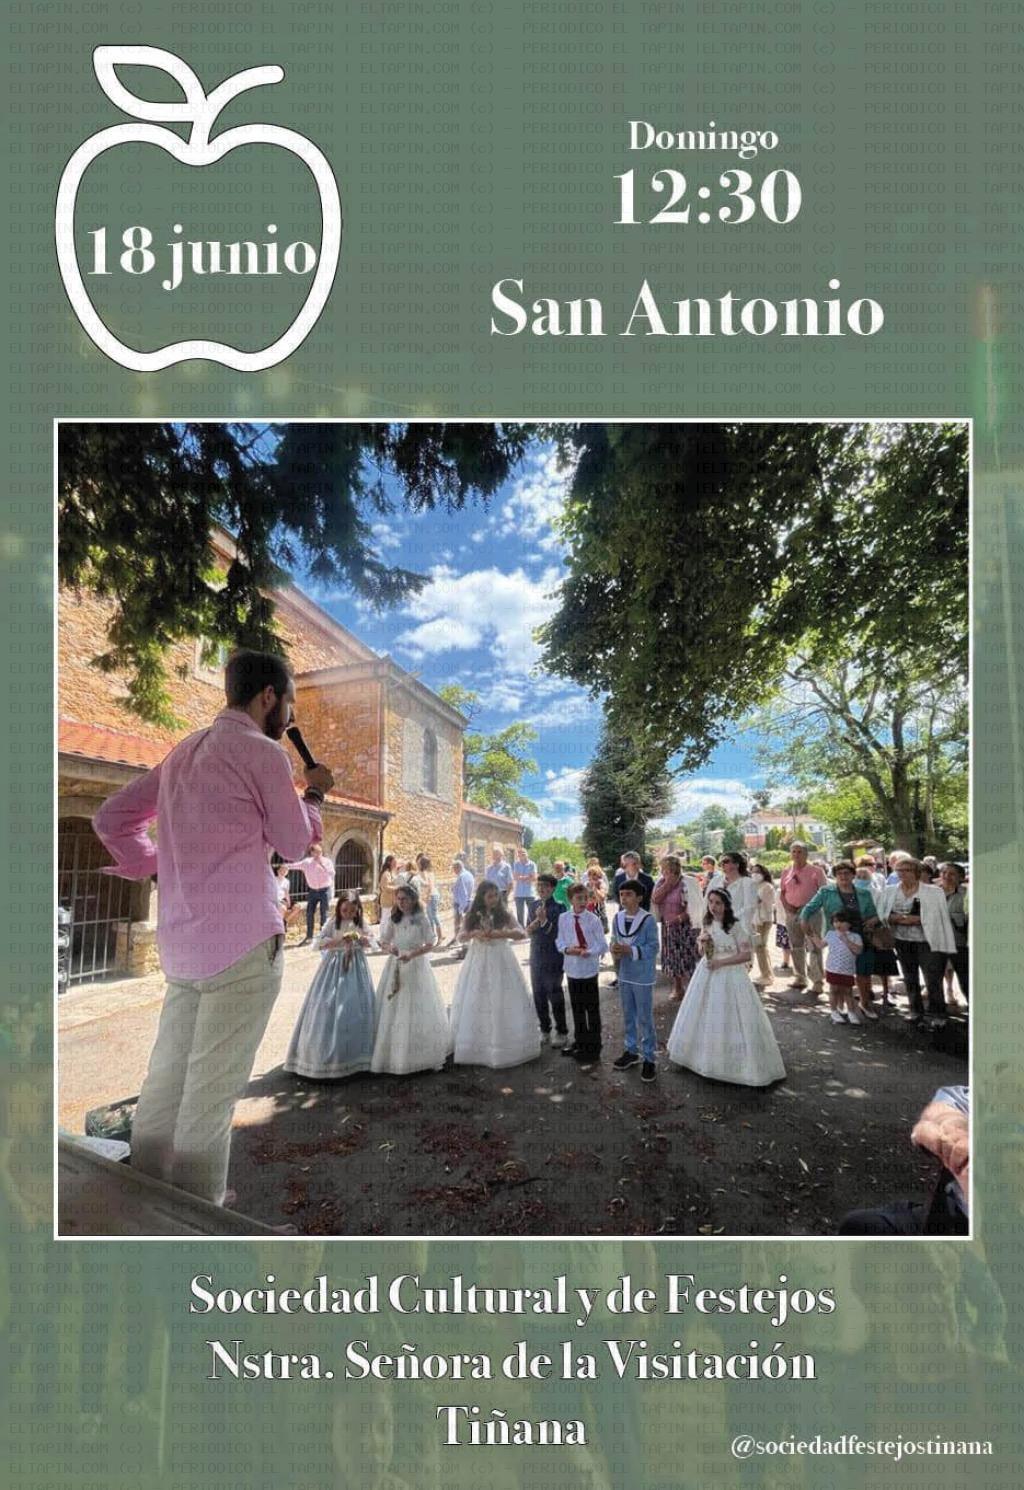 El Tapin - La Sociedad de Festejos Nuestra Señora de la Visitación de Tiñana organiza la Subasta de San Antonio el domingo 18 de junio